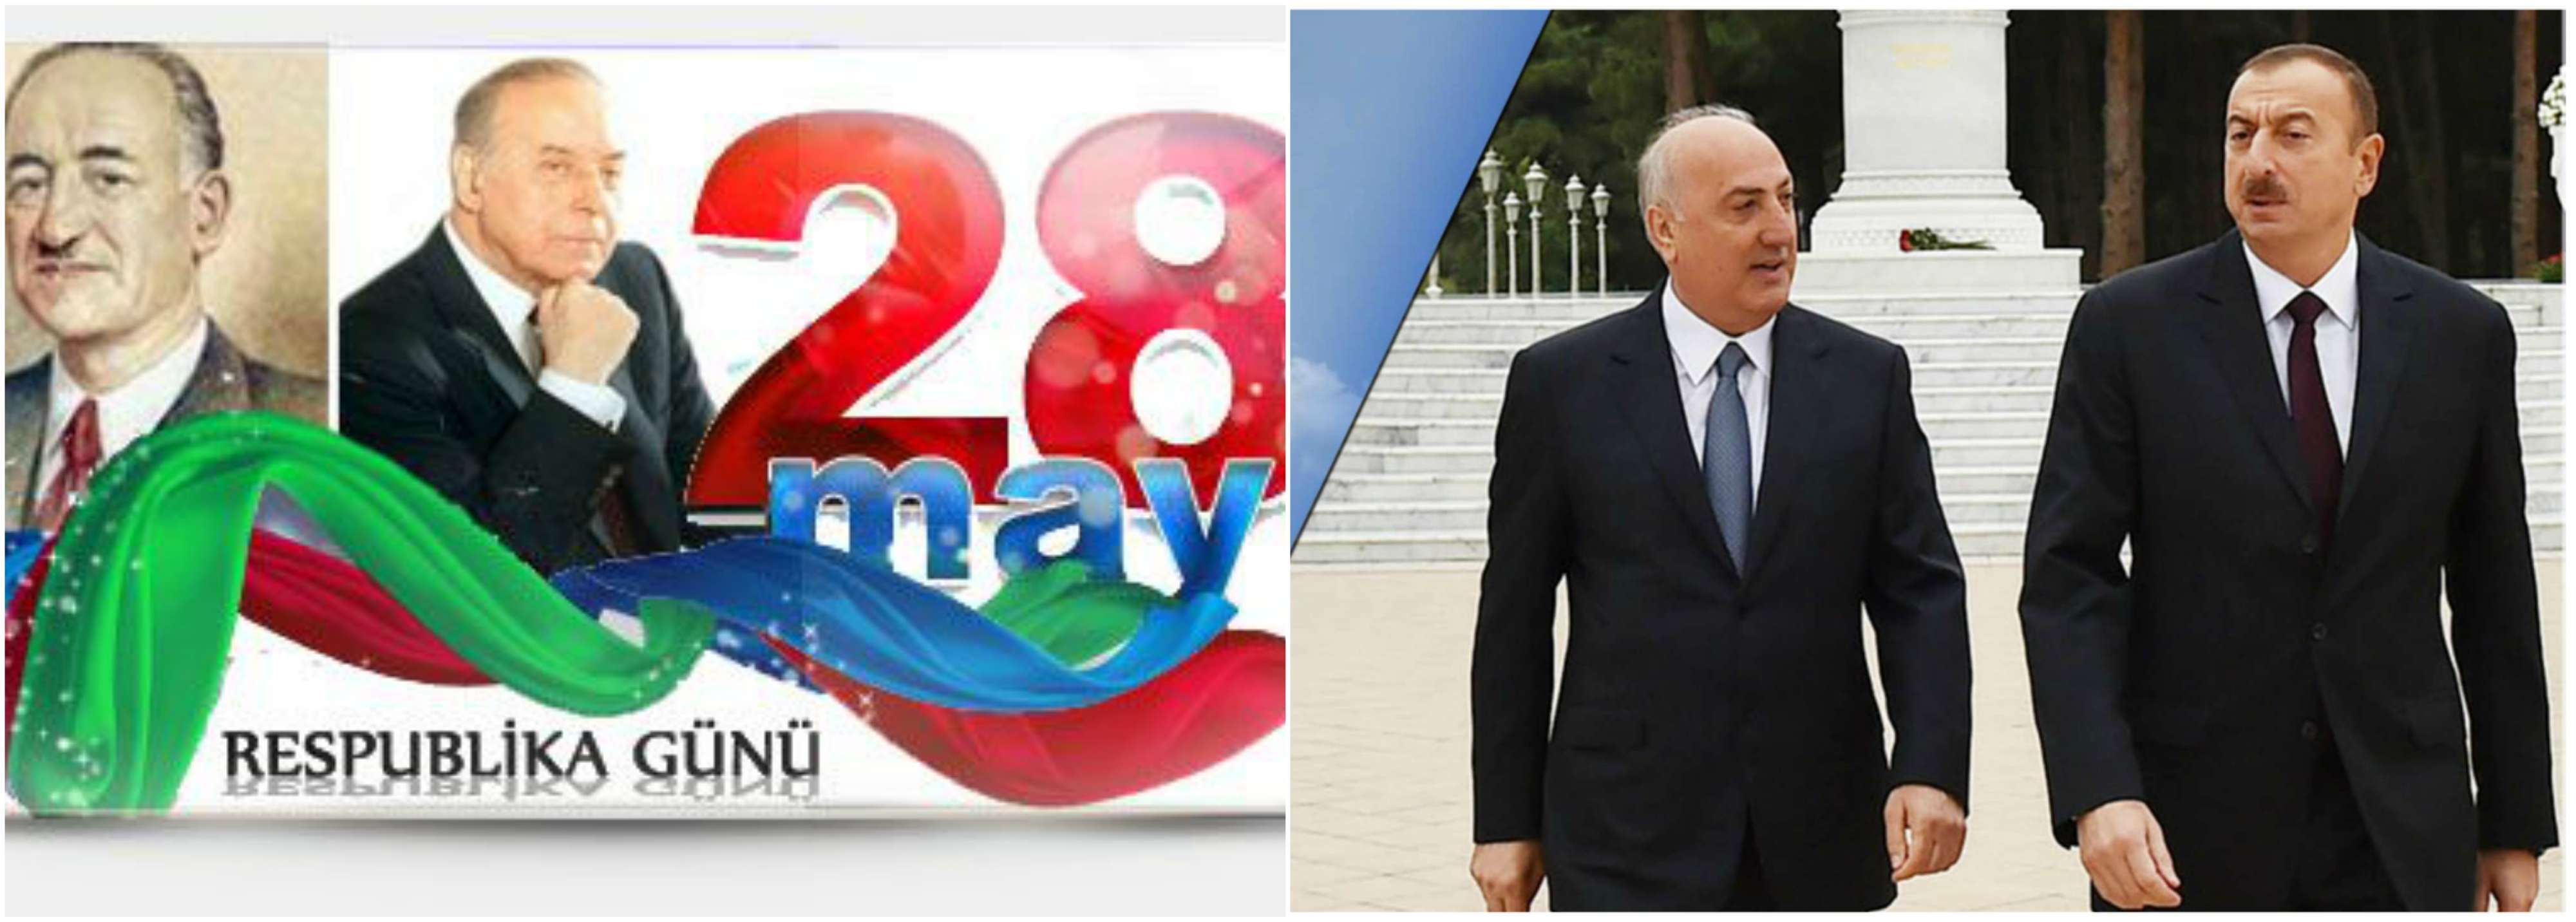 Rahim Musatafayev: 28 May Respublika günüdür